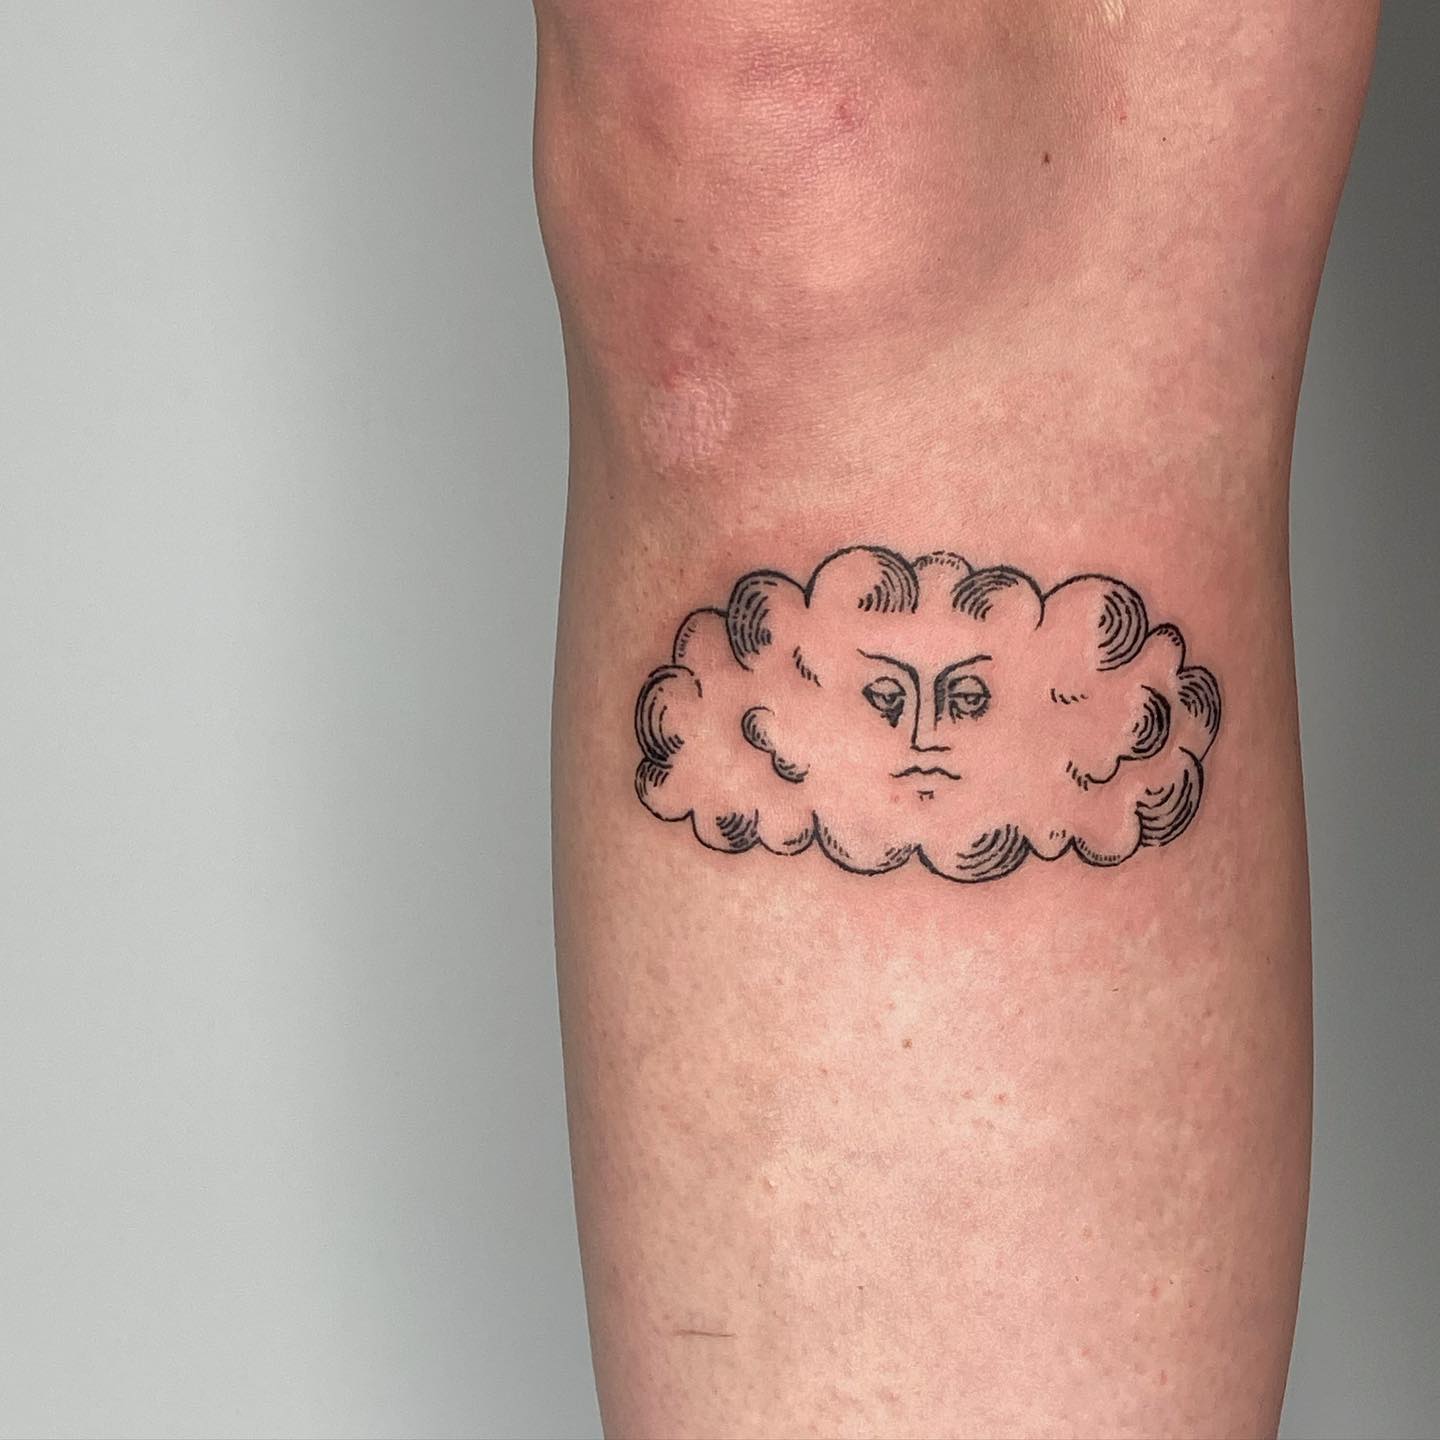 Tatuaje de nube en la rodilla.